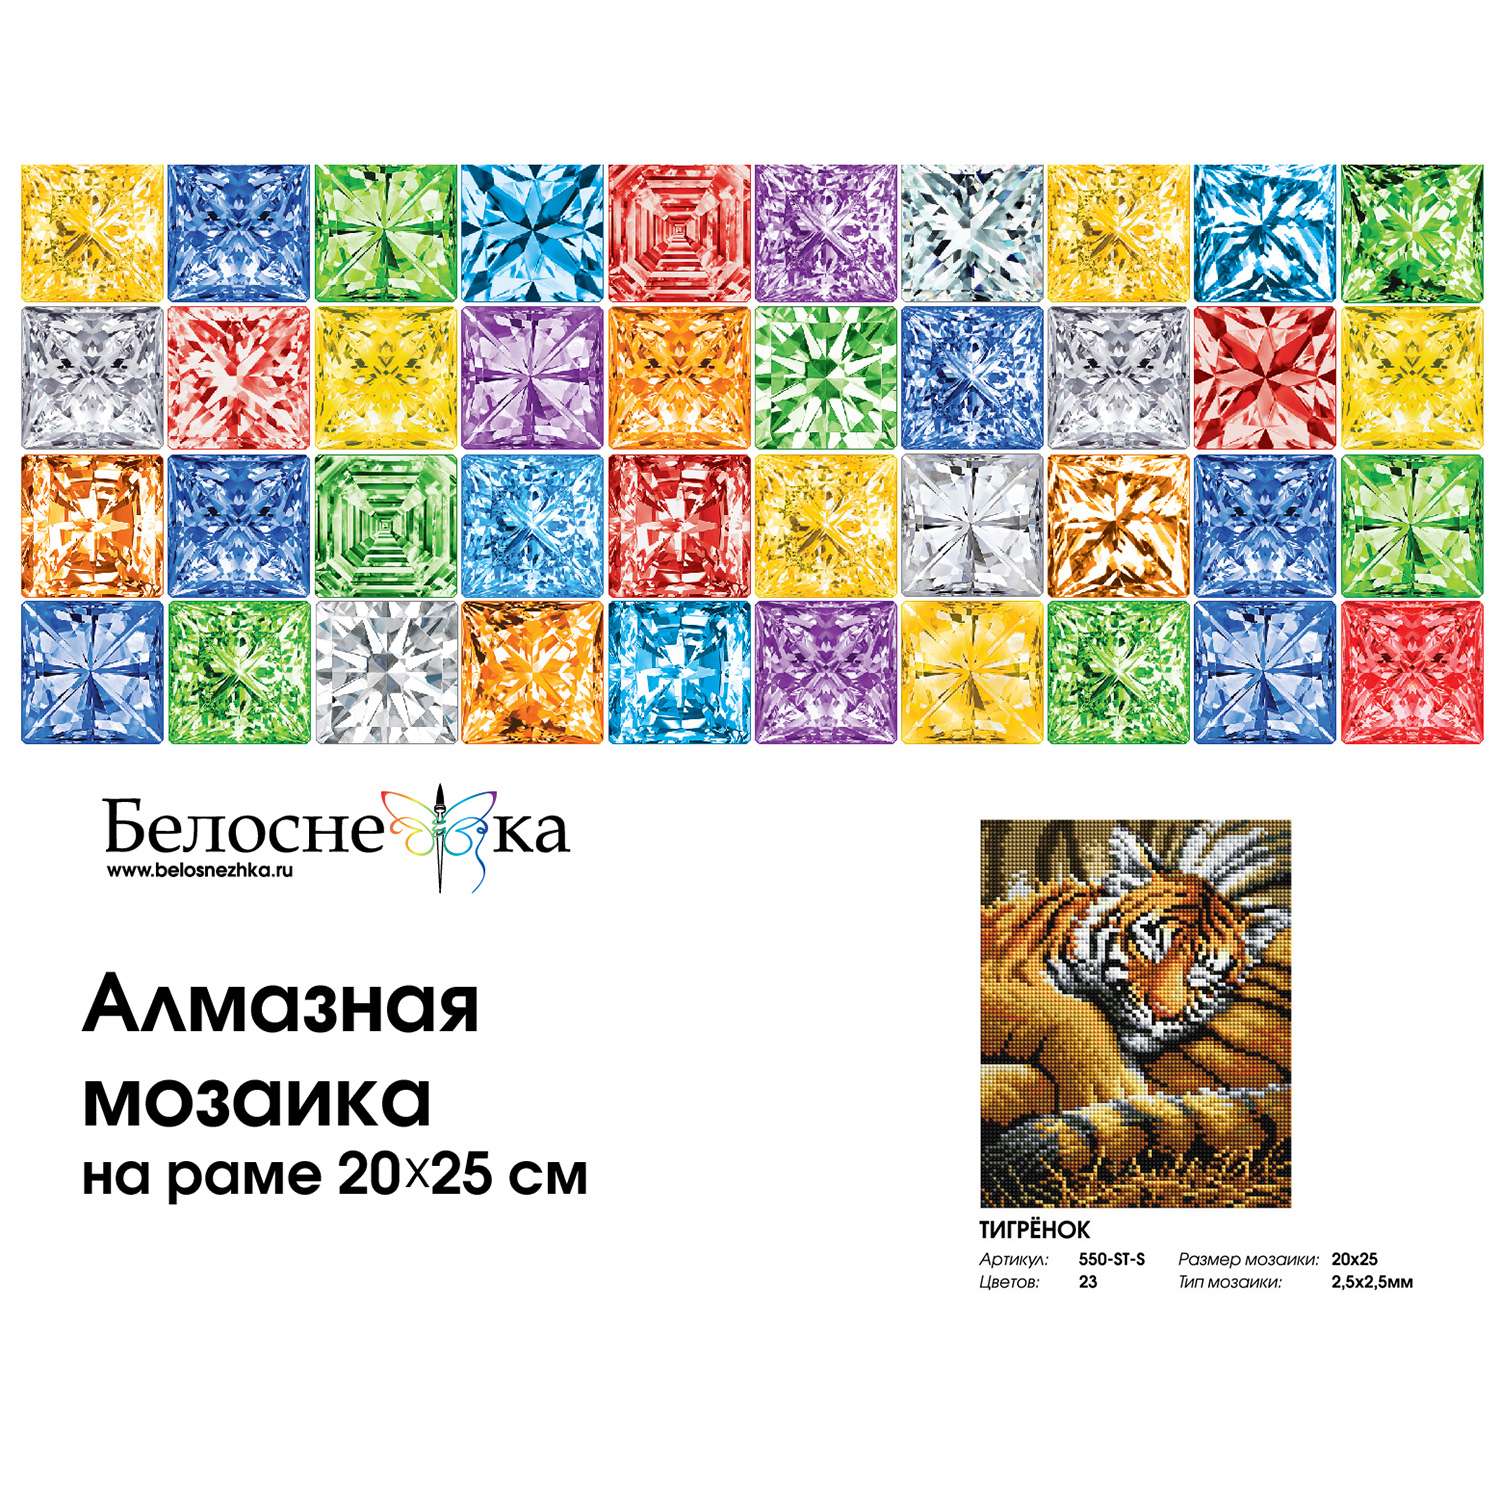 Алмазная мозаика на подрамнике Белоснежка Тигрёнок 550-ST-S 20х25 см. - фото 4